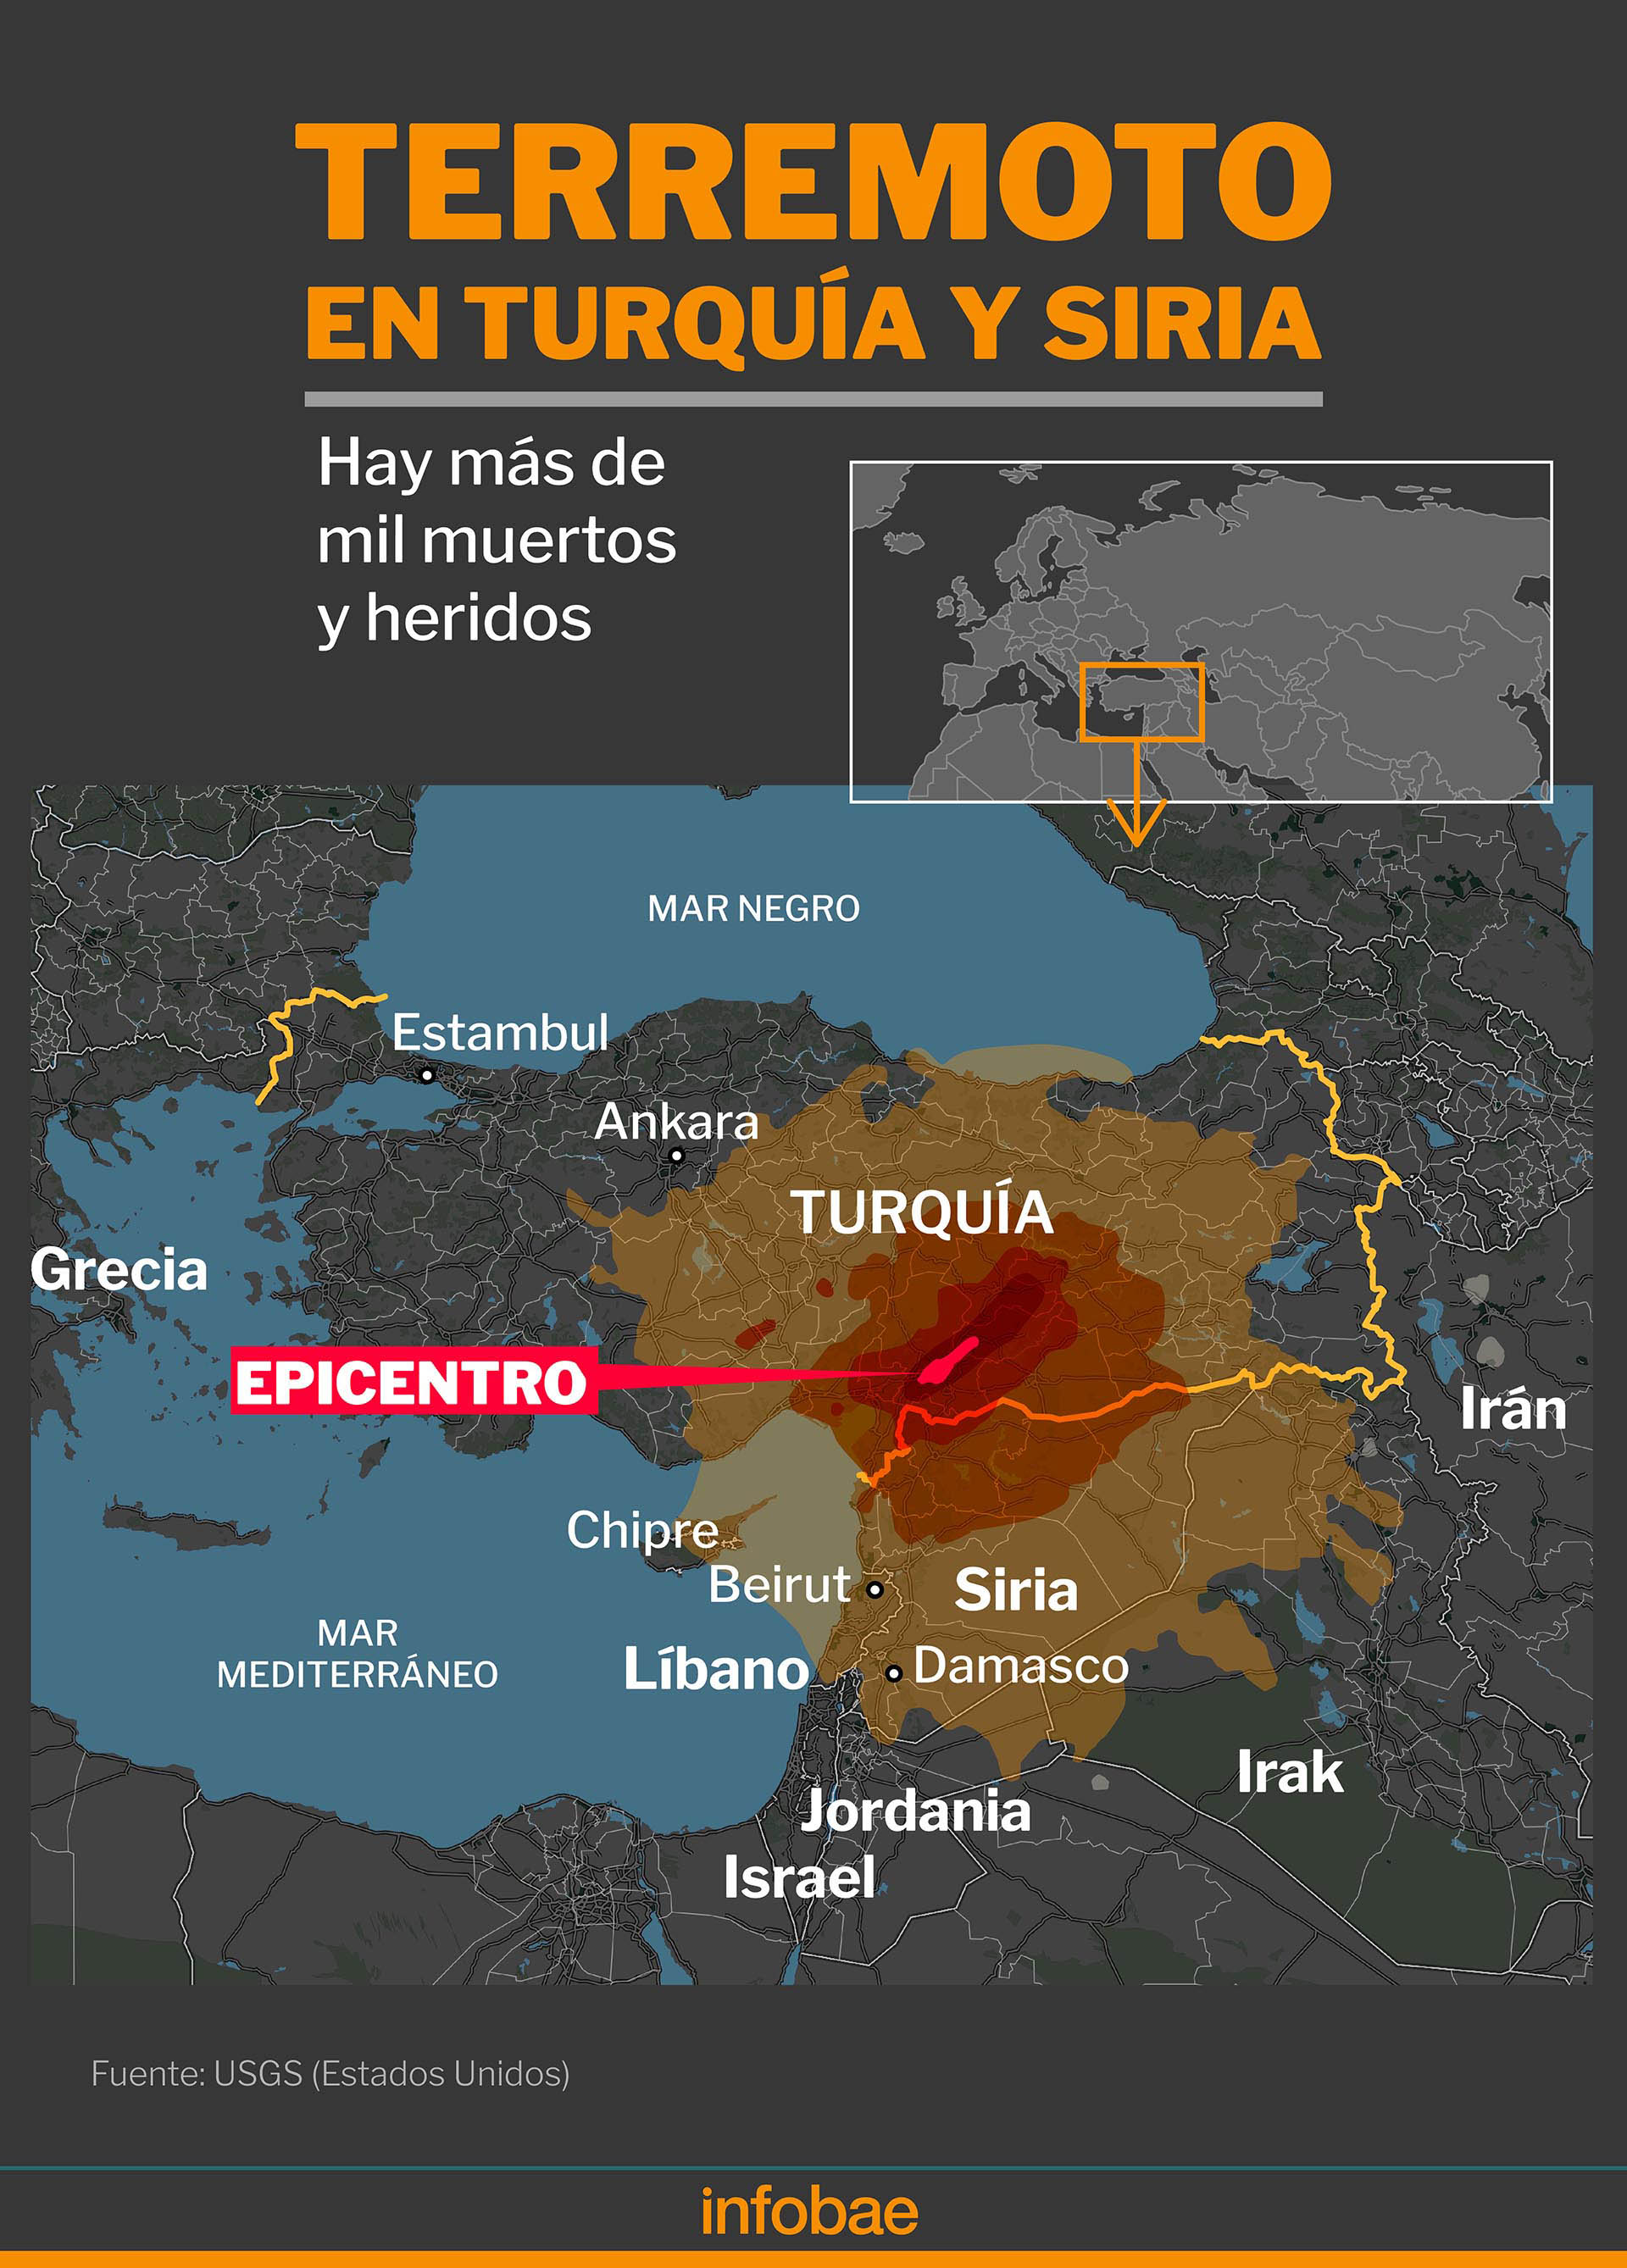 Desde el consulado argentino en Estambul advierten que las tormentas que afectan a Turquía desde ayer pueden resultar “un inconveniente”